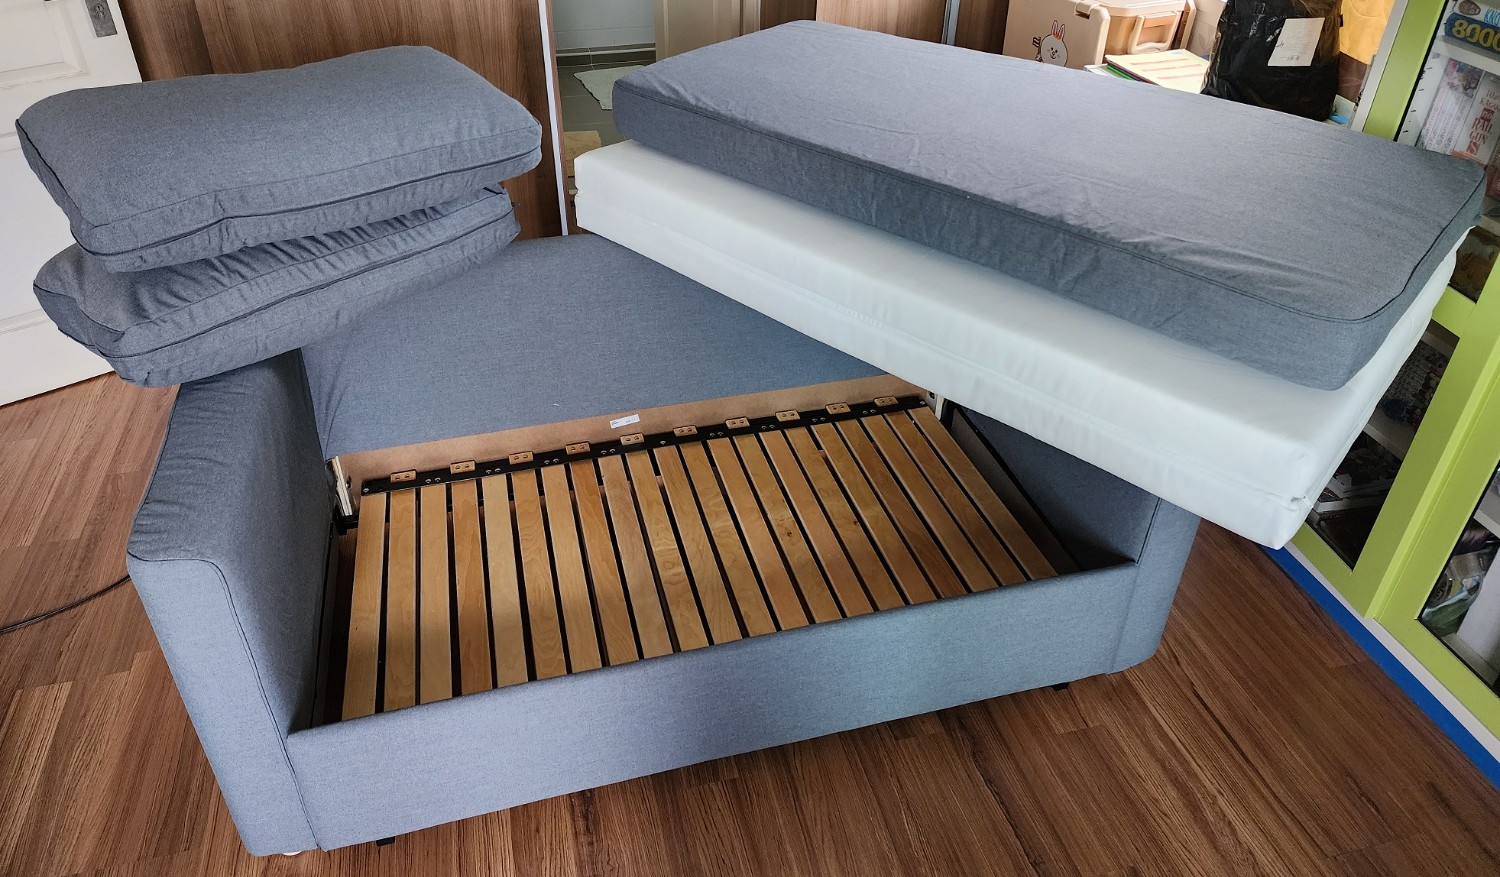 Ikea Sofa Bed à¸žà¸²à¸£à¸¸à¸ž à¹�à¸›à¸¥à¸‡à¸£à¹ˆà¸²à¸‡à¸¢à¸²à¸� - Pantip